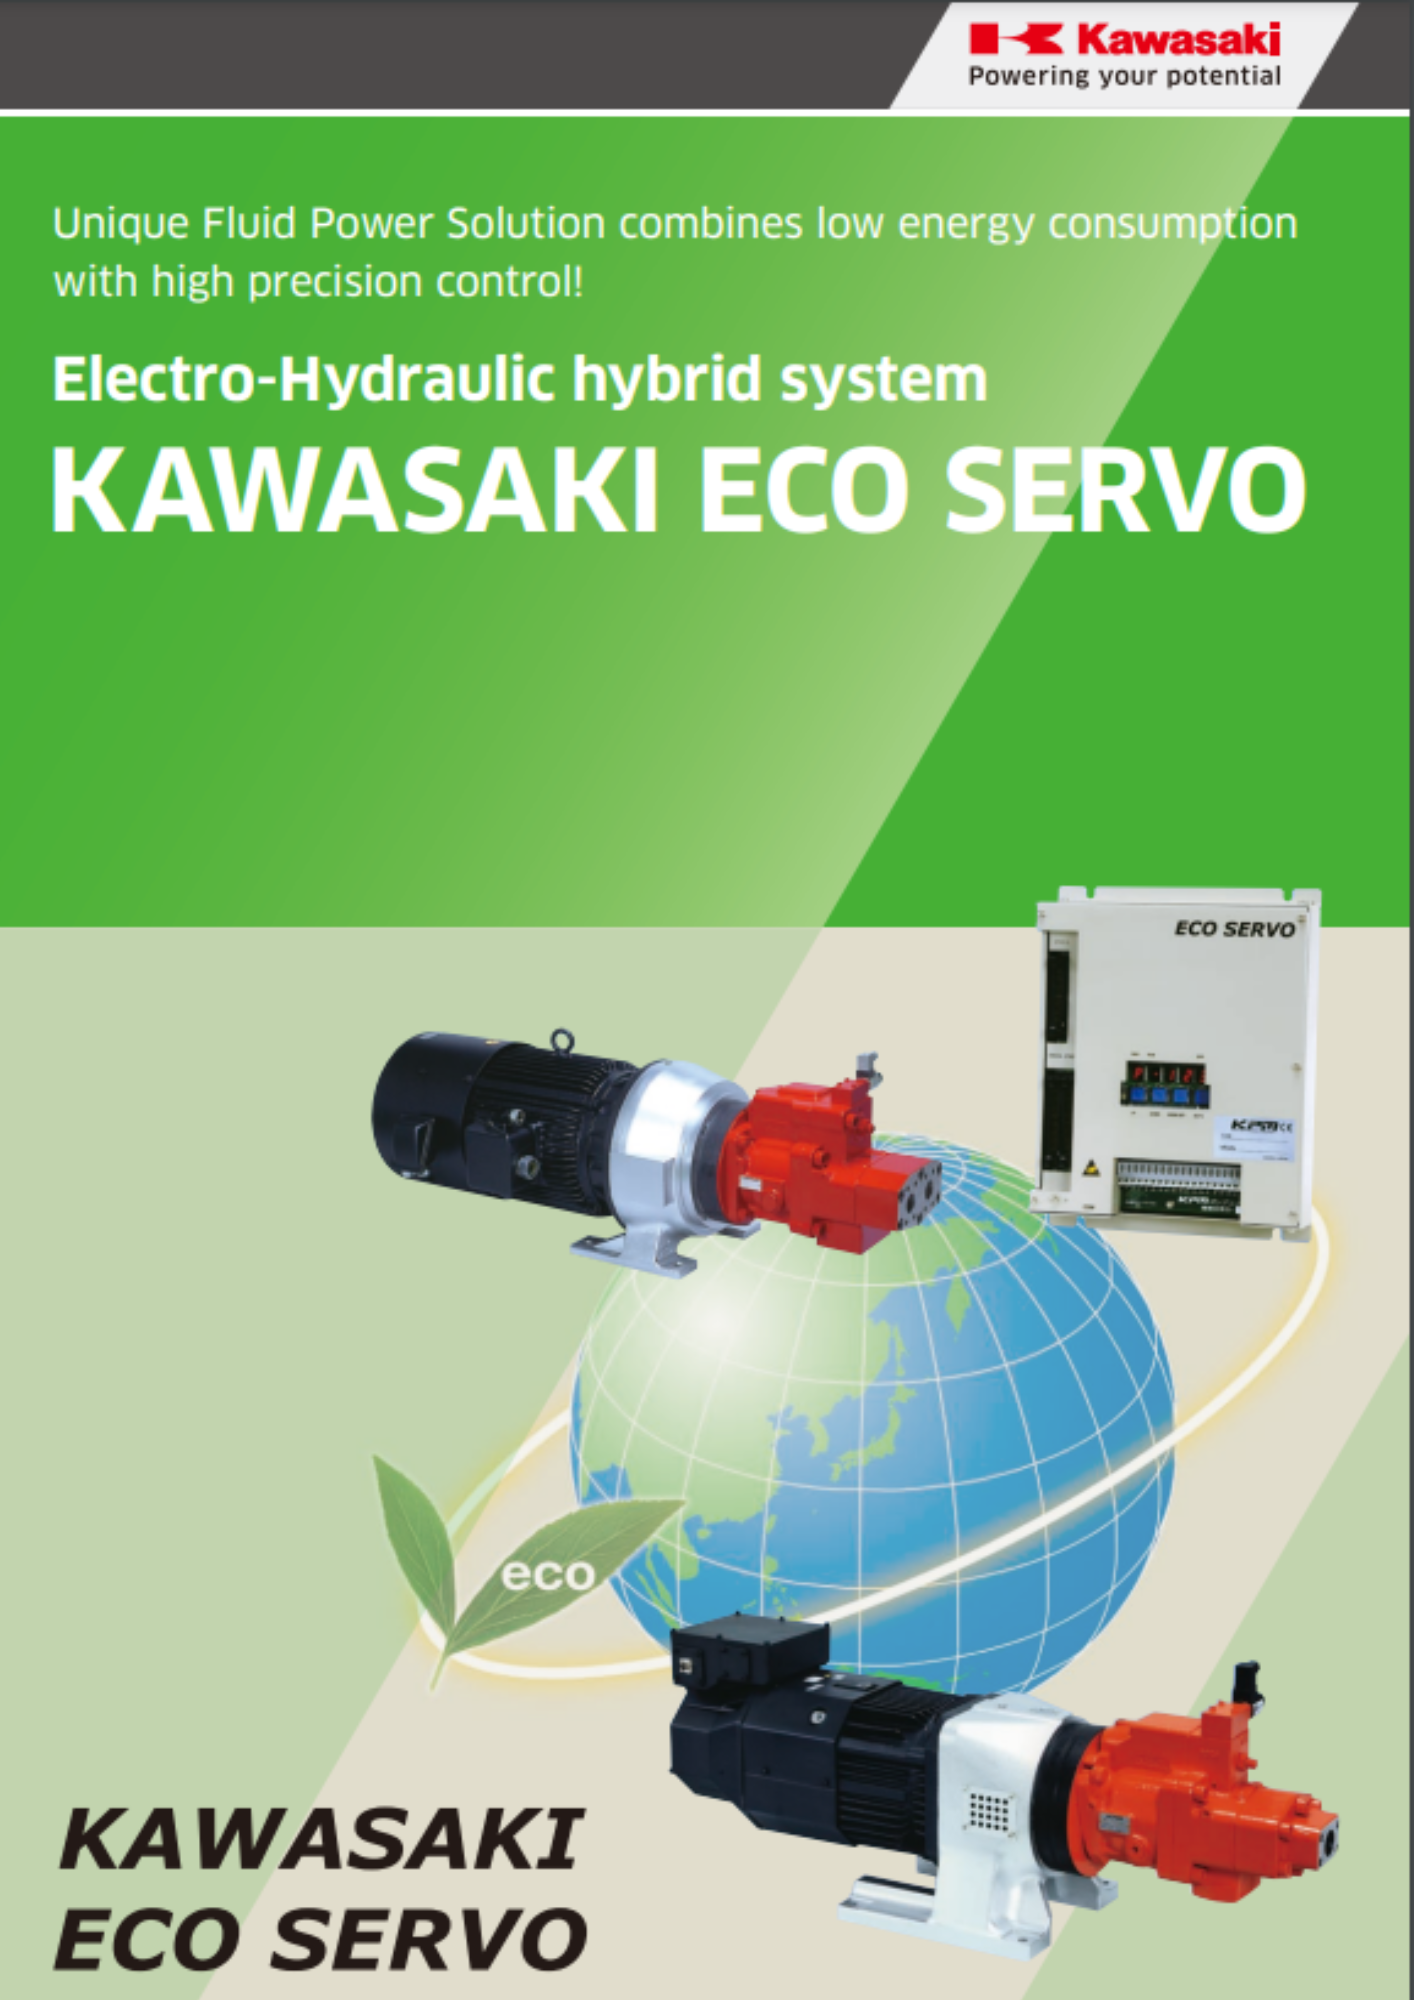 Kawasaki: Eco Servo servo pumps